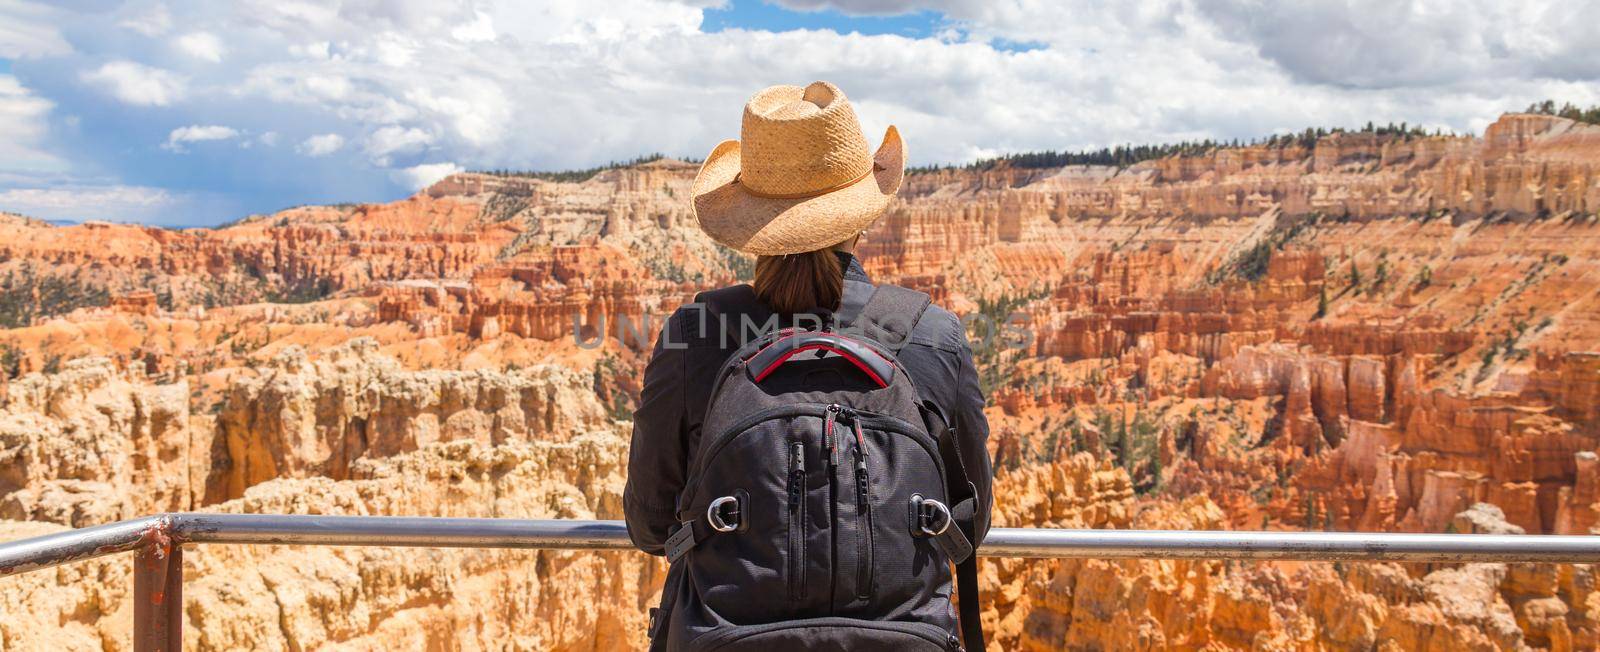 Woman wearing hat looking at the Bryce Canyon, Utah USA by Mariakray